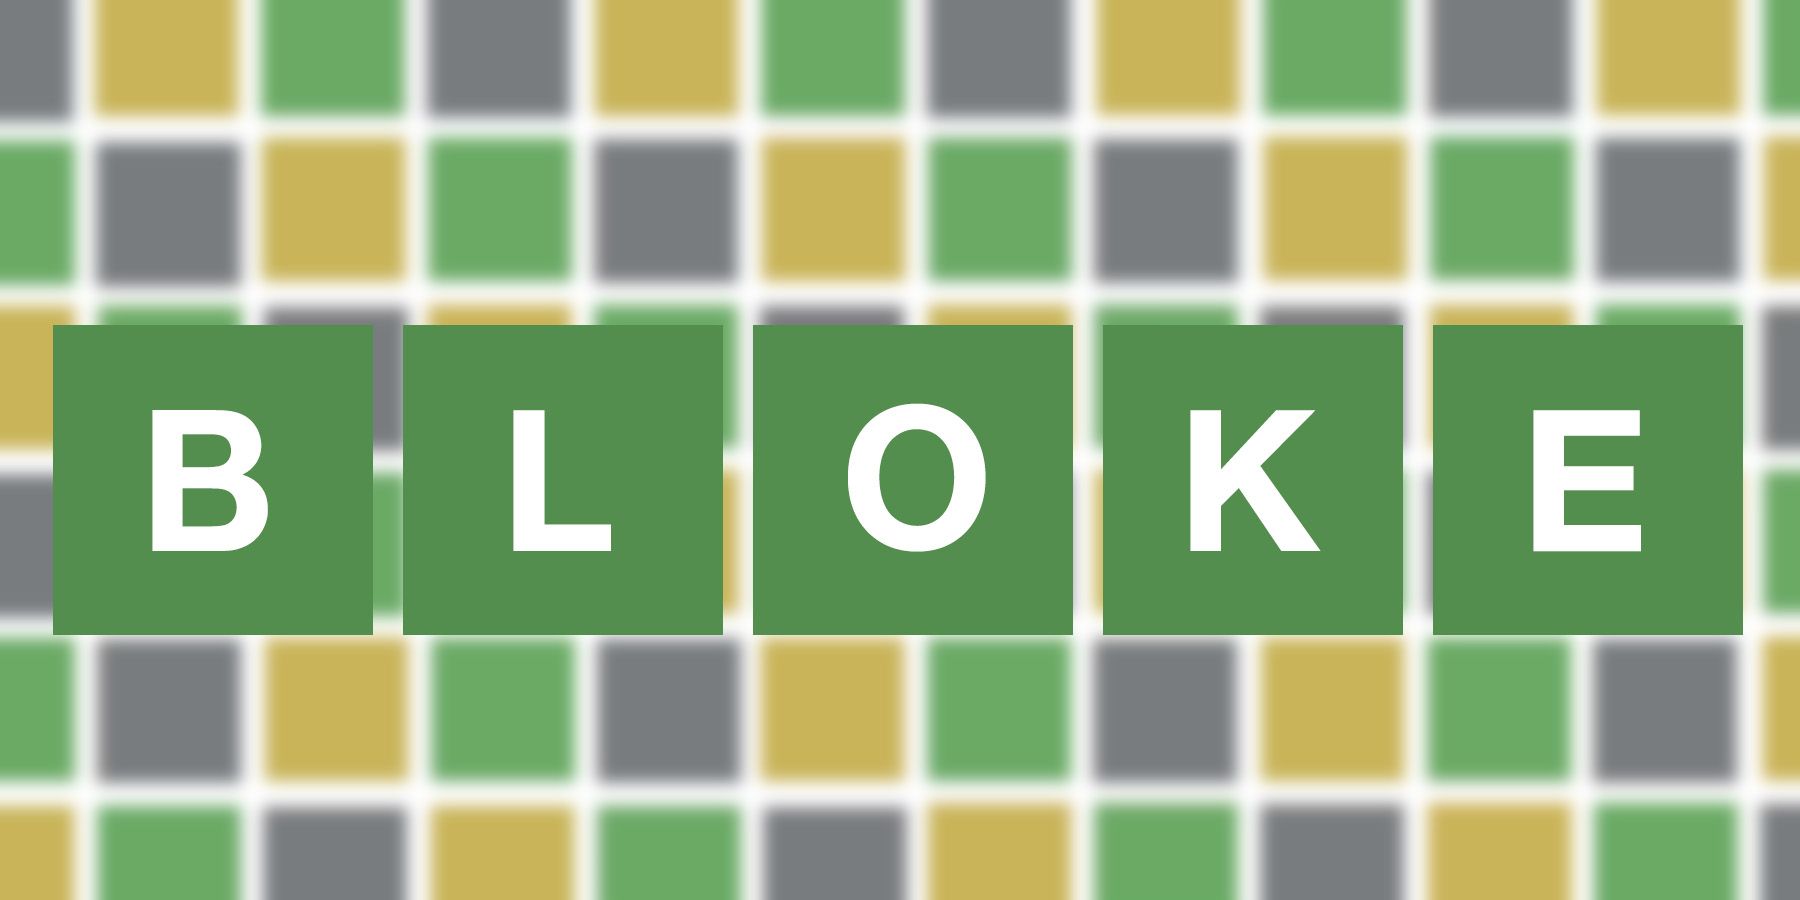 BLOKE (Wordle #250 - February 24, 2022)